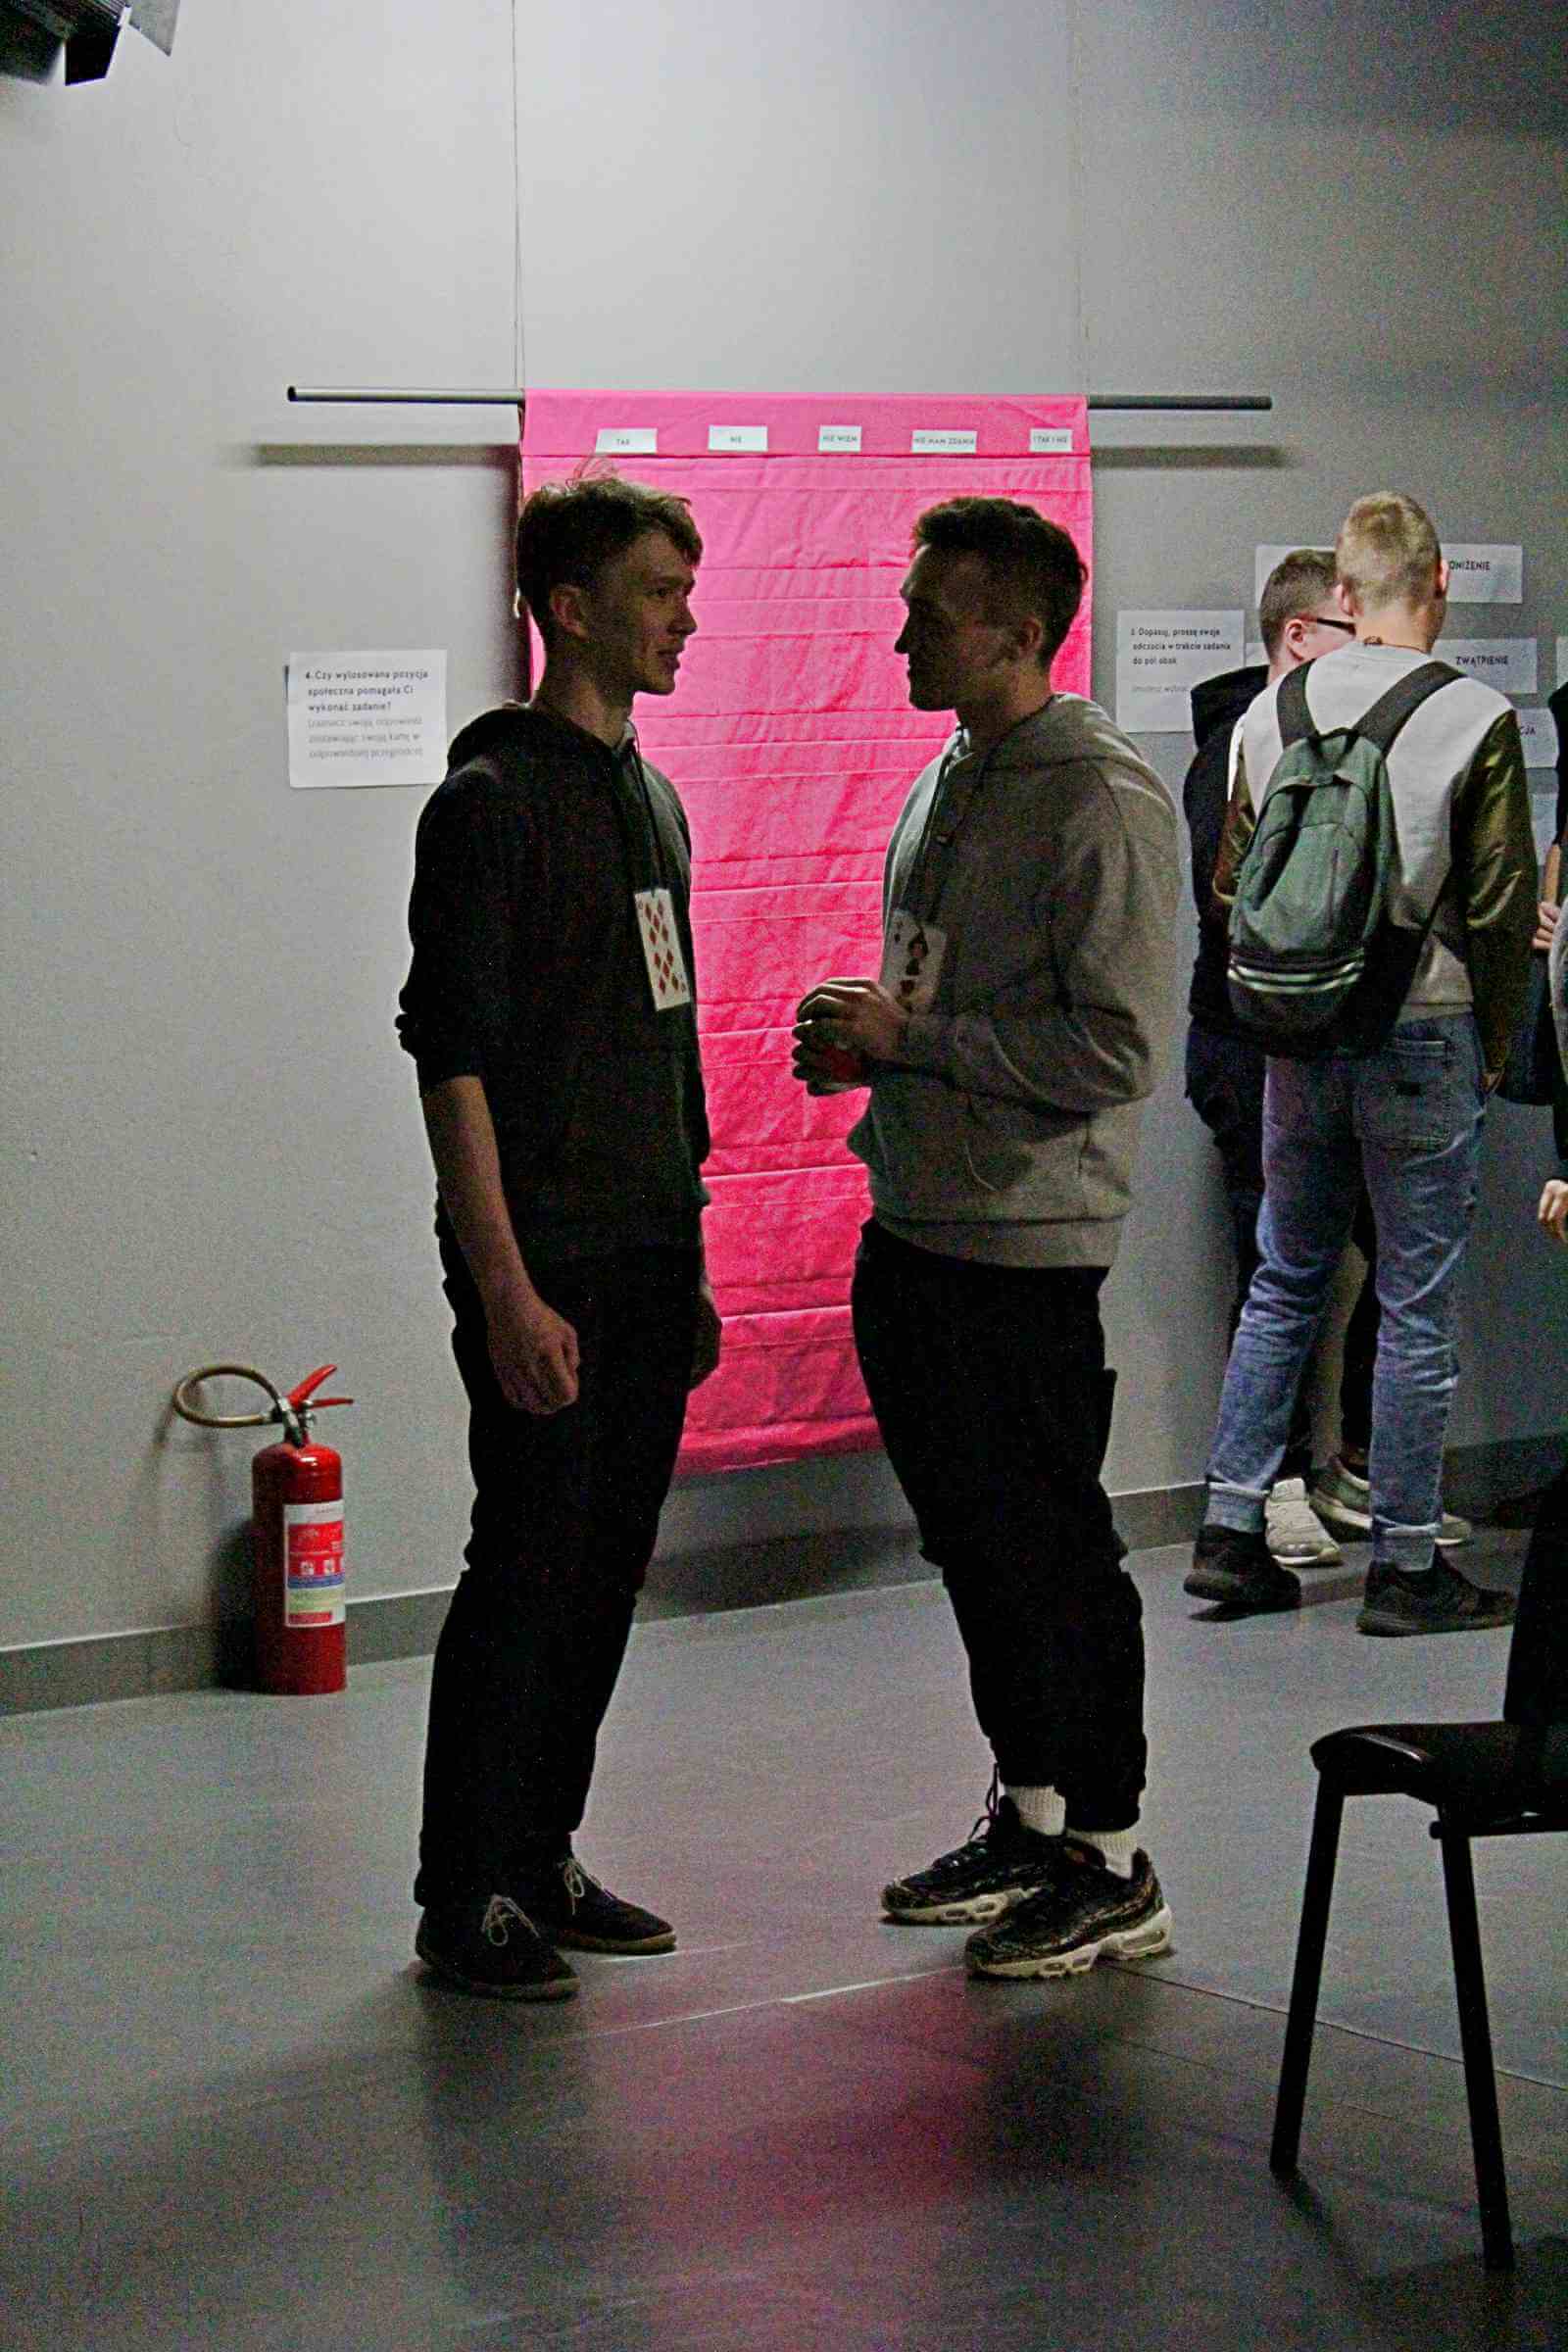 dwóch młodych mężczyzn stoi i rozmawia ze sobą, za nimi widoczne dwie osoby, na ścianie wisi czerwony materiał z kieszonkami